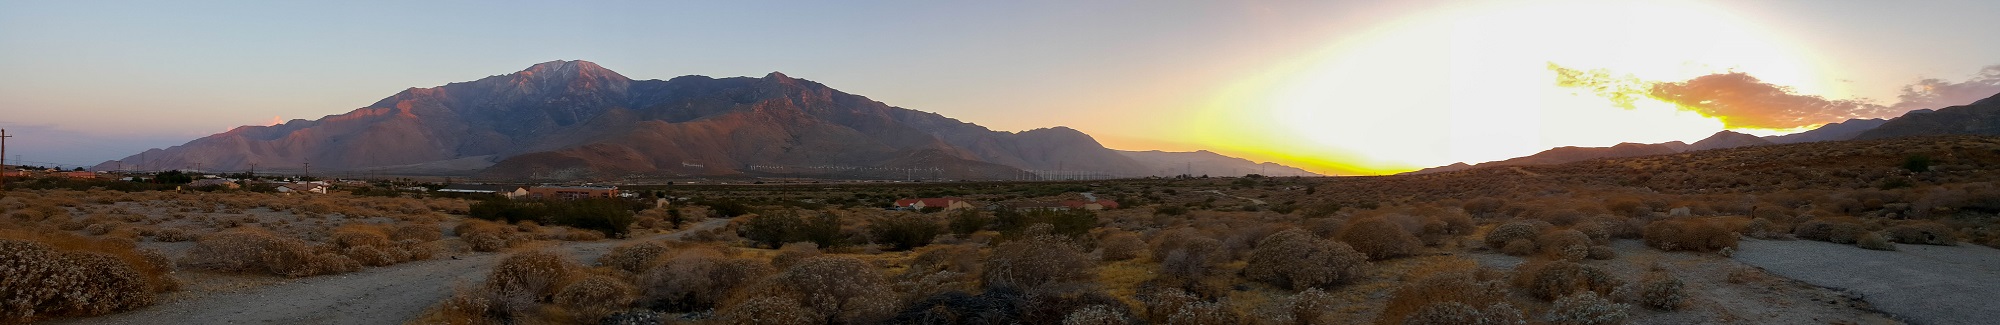 Jacinto sunset panorama